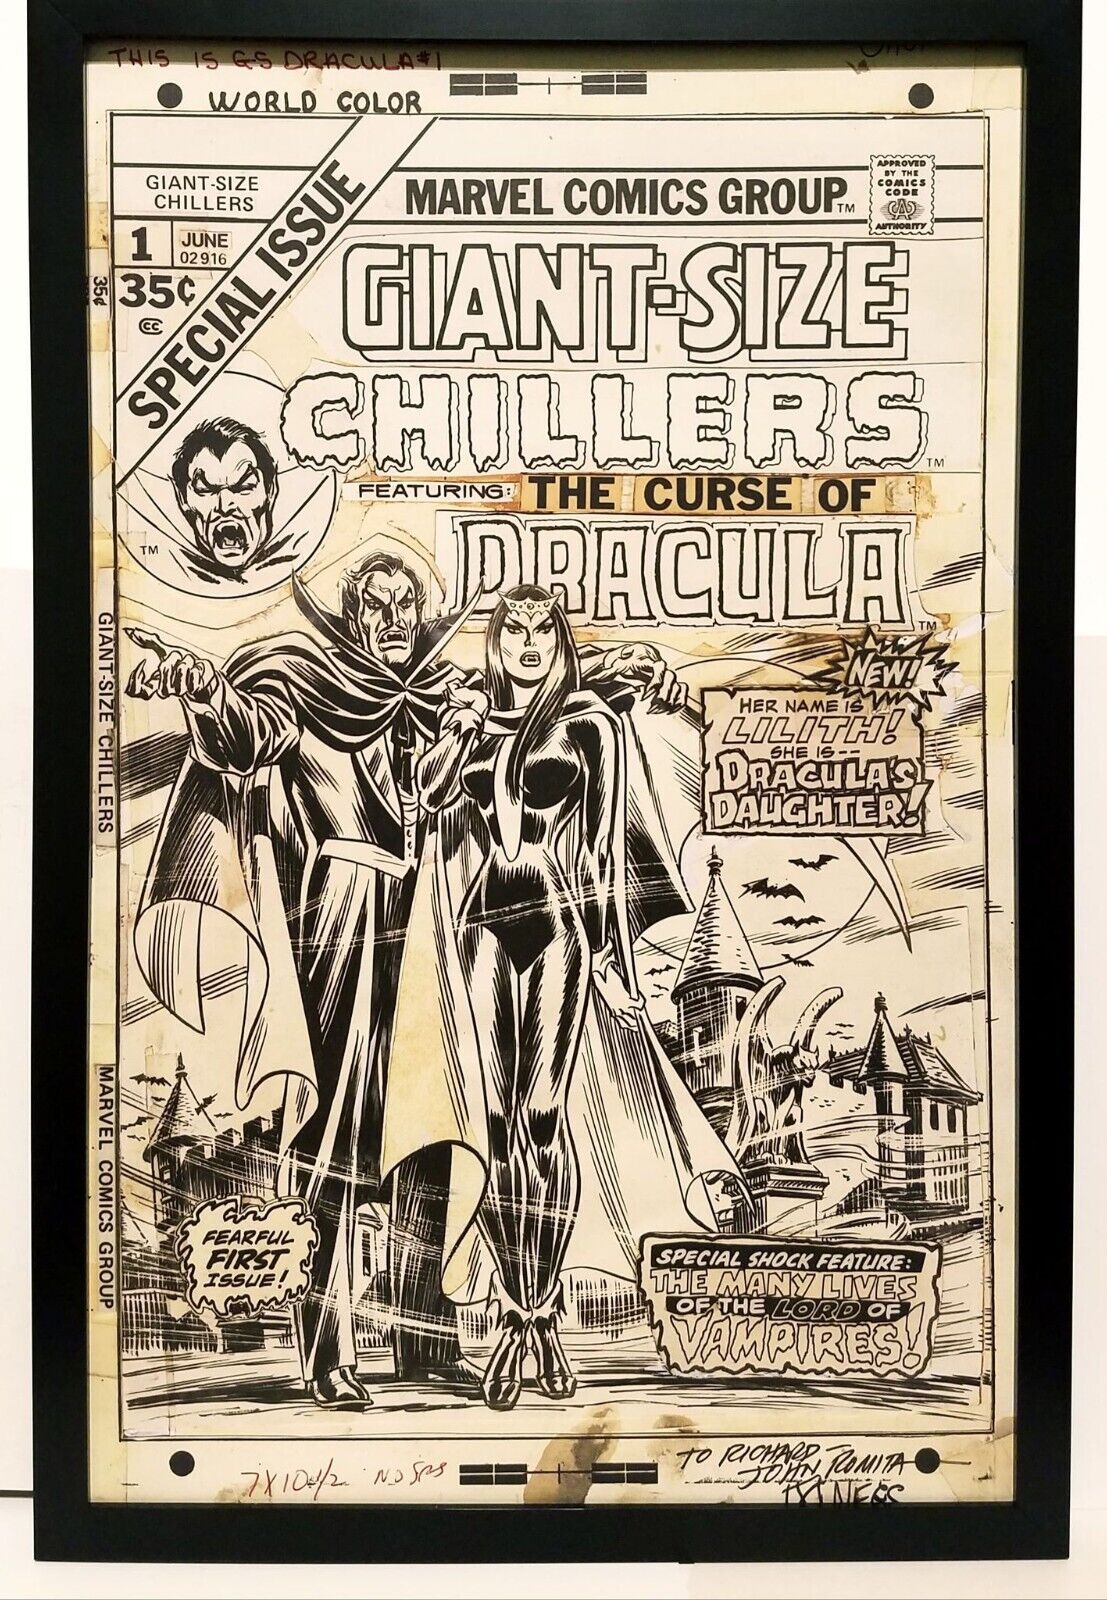 Giant Size Chillers #1 by John Romita 11x17 FRAMED Original Art Poster Marvel Co